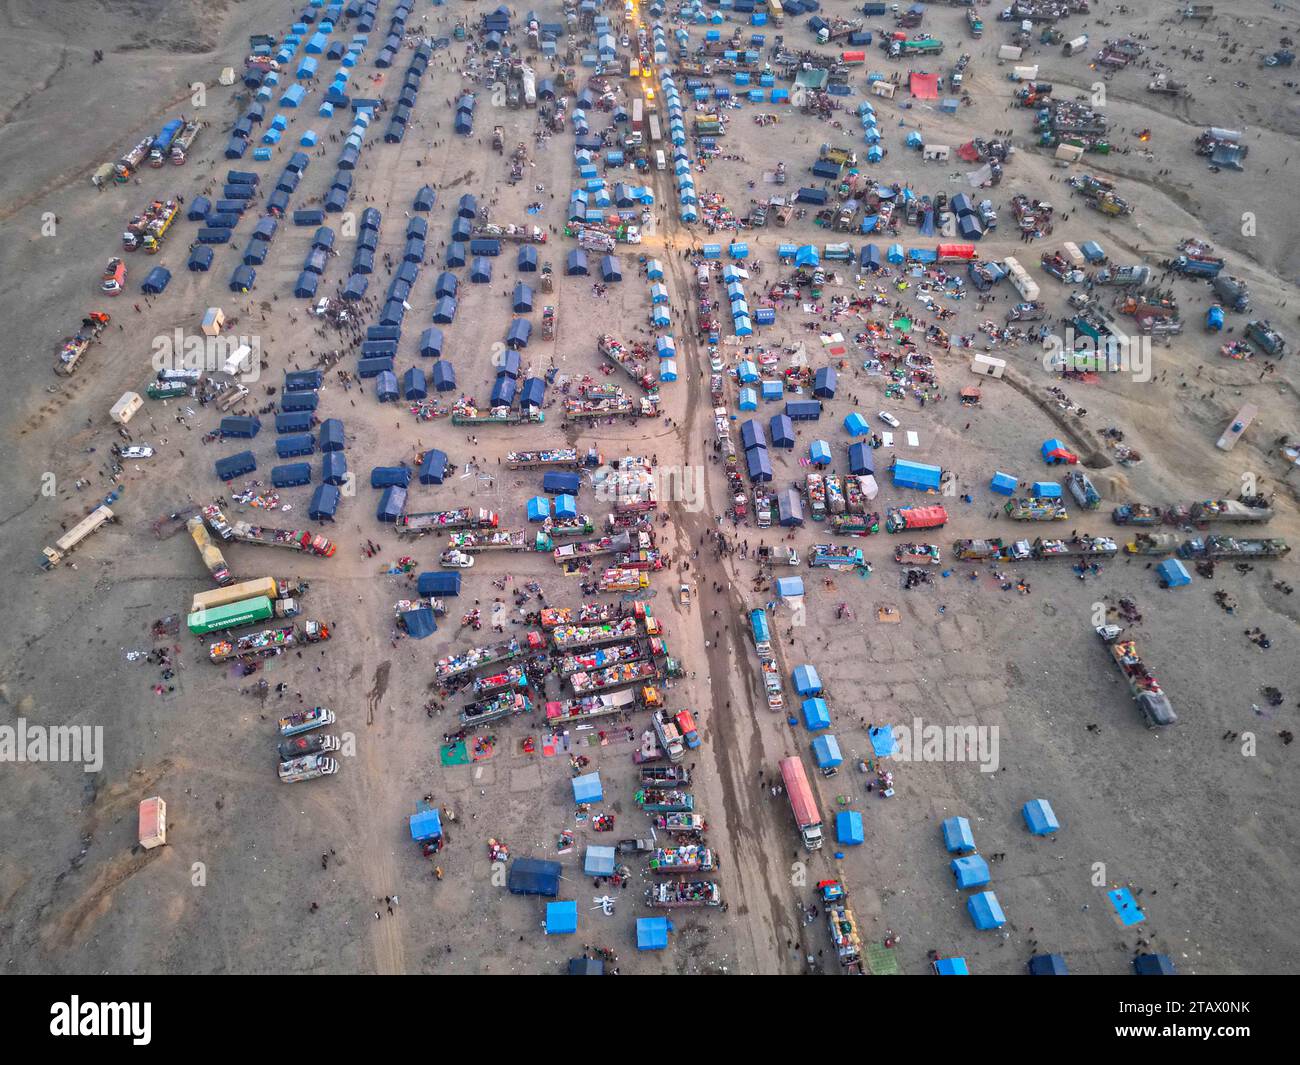 Afghanistan-Flüchtlinge, die Pakistan verlassen müssen: Ein Drohnenblick auf ein Flüchtlingslager mit Tausenden verarmter Menschen. Stockfoto